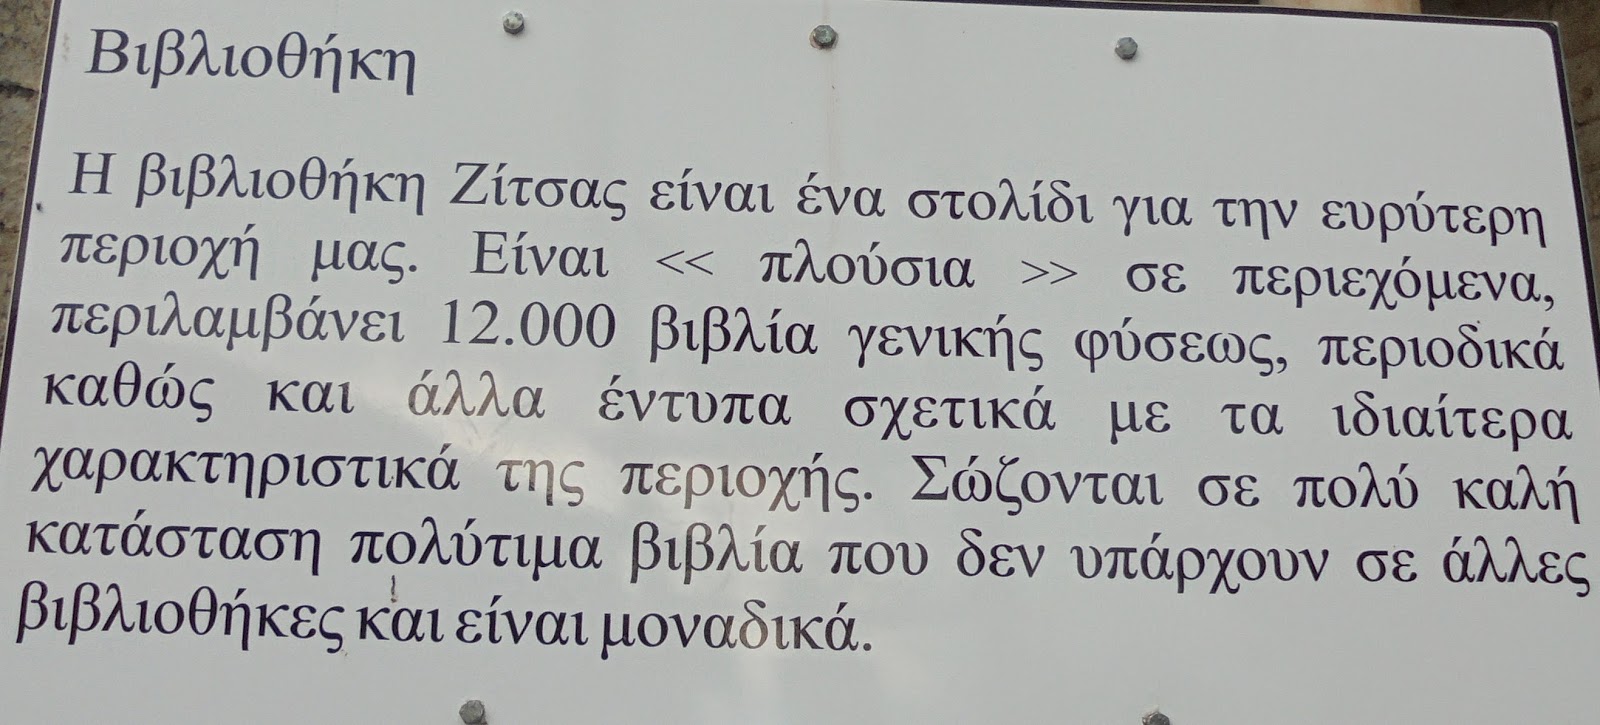 Βιβλιοθήκη στη Ζίτσα Ιωαννίνων